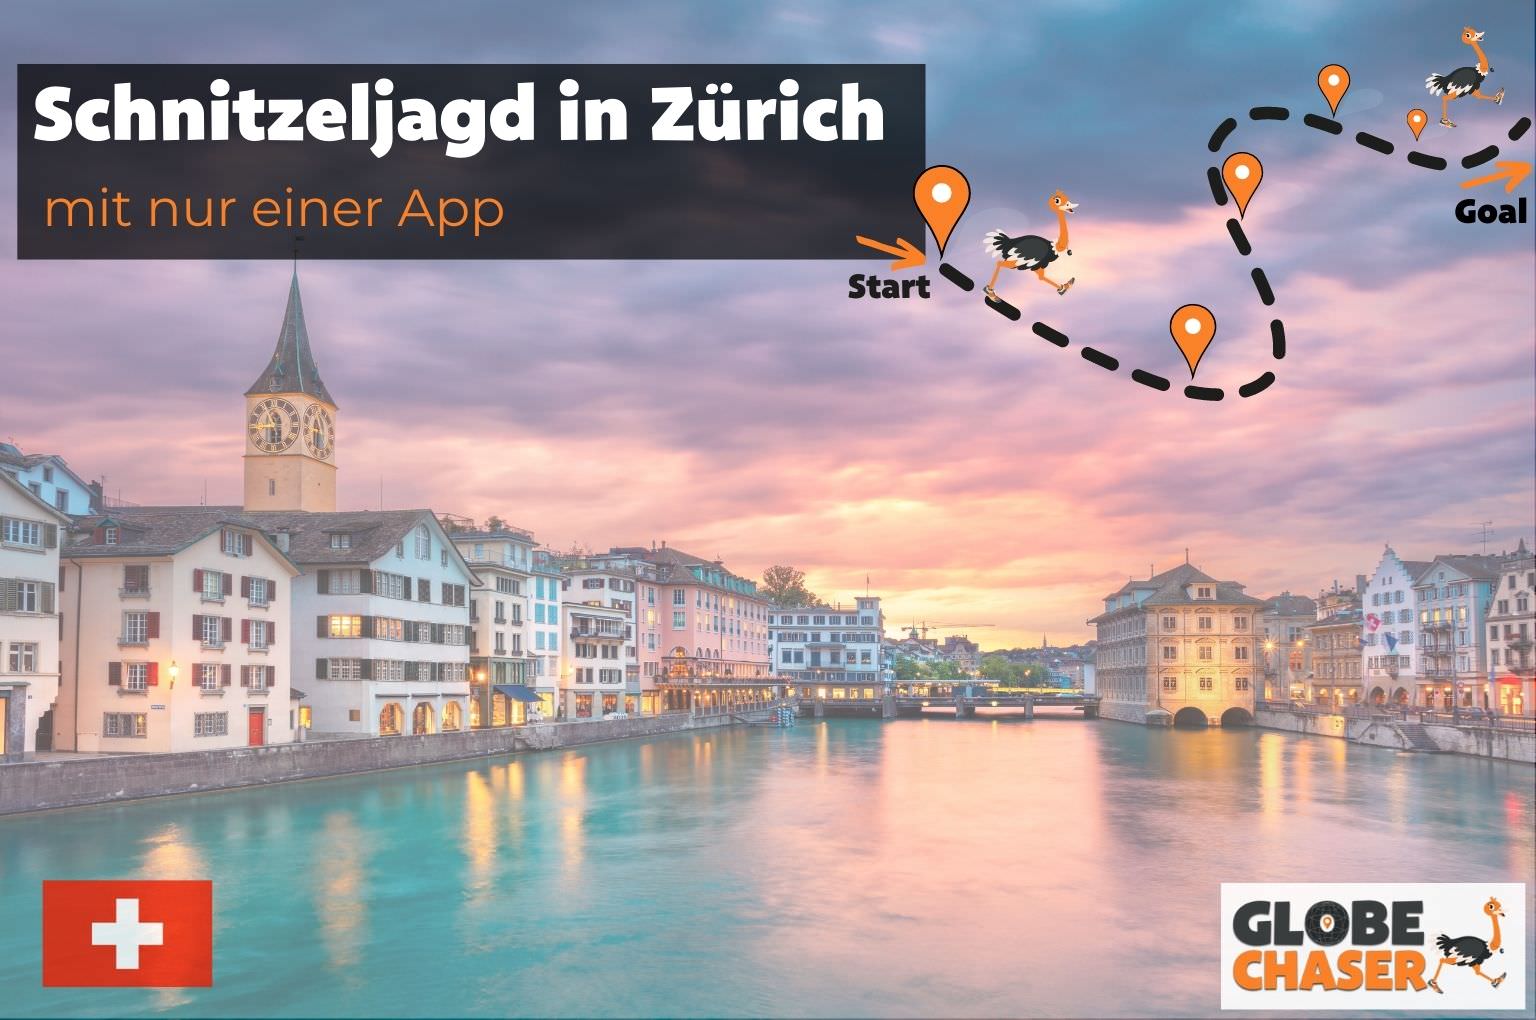 Schnitzeljagd in Zuerich mit App - Globe Chaser Erlebnisse Schweiz